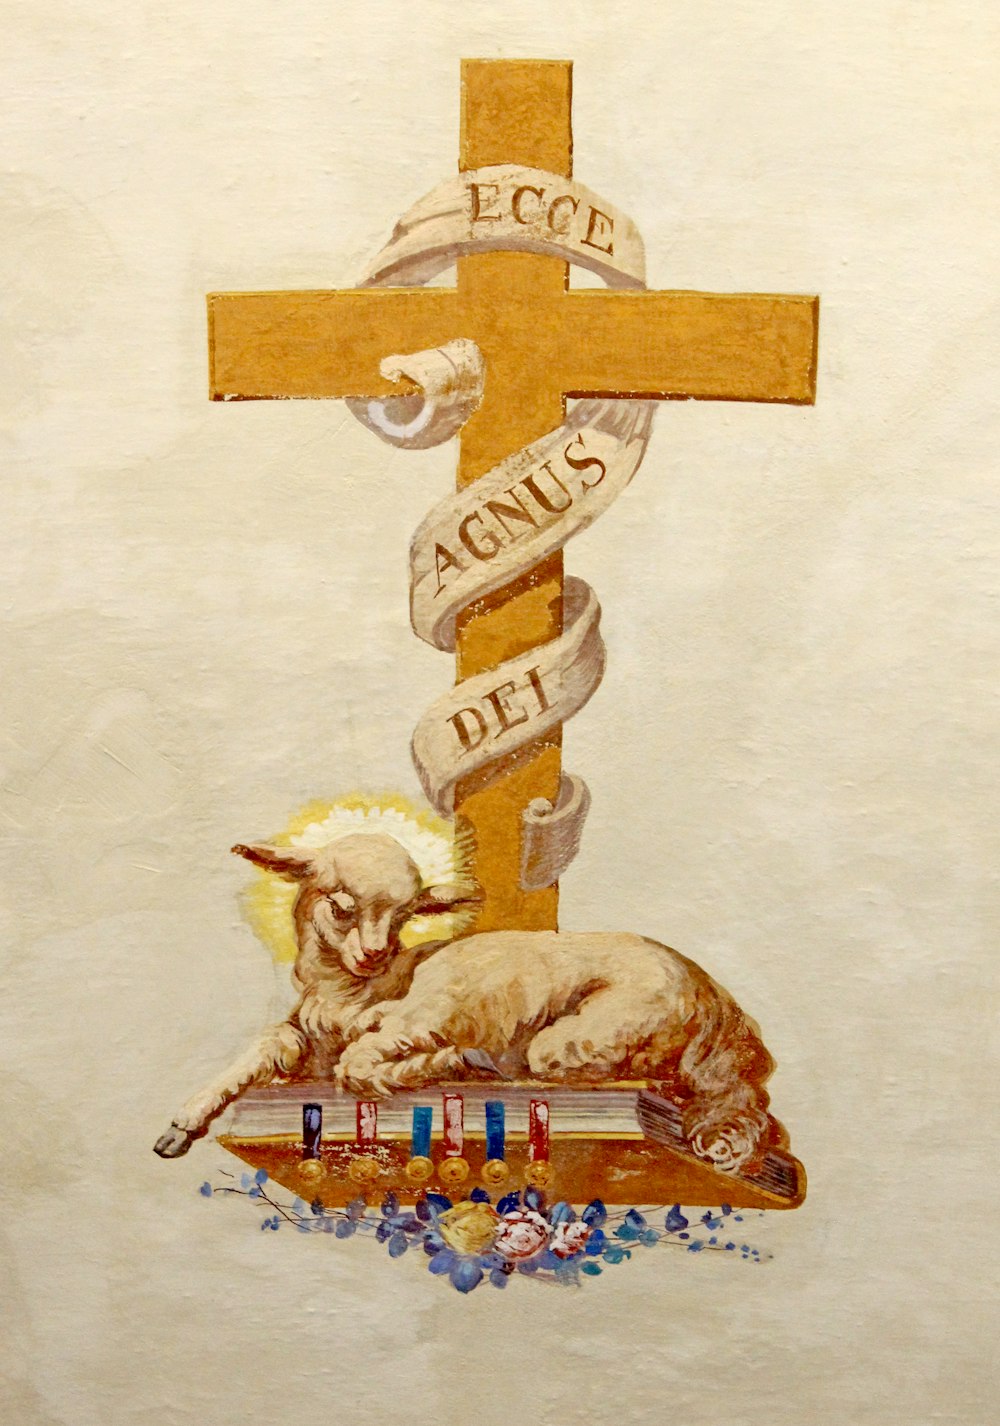 cordeiro na bíblia sob a ilustração da cruz